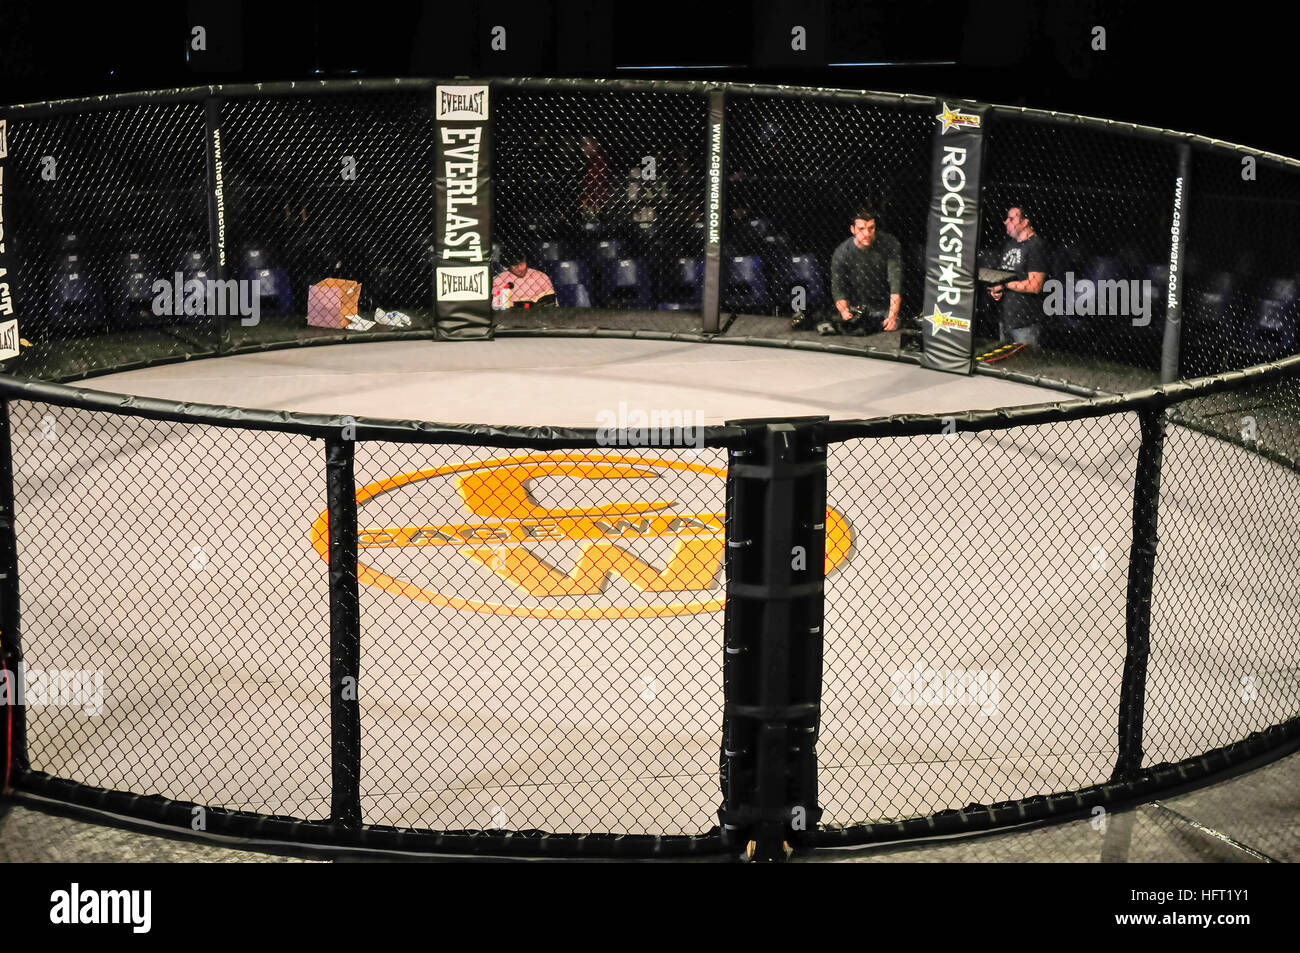 Cage vide à un tournoi de combats de la cage avant le match Banque D'Images